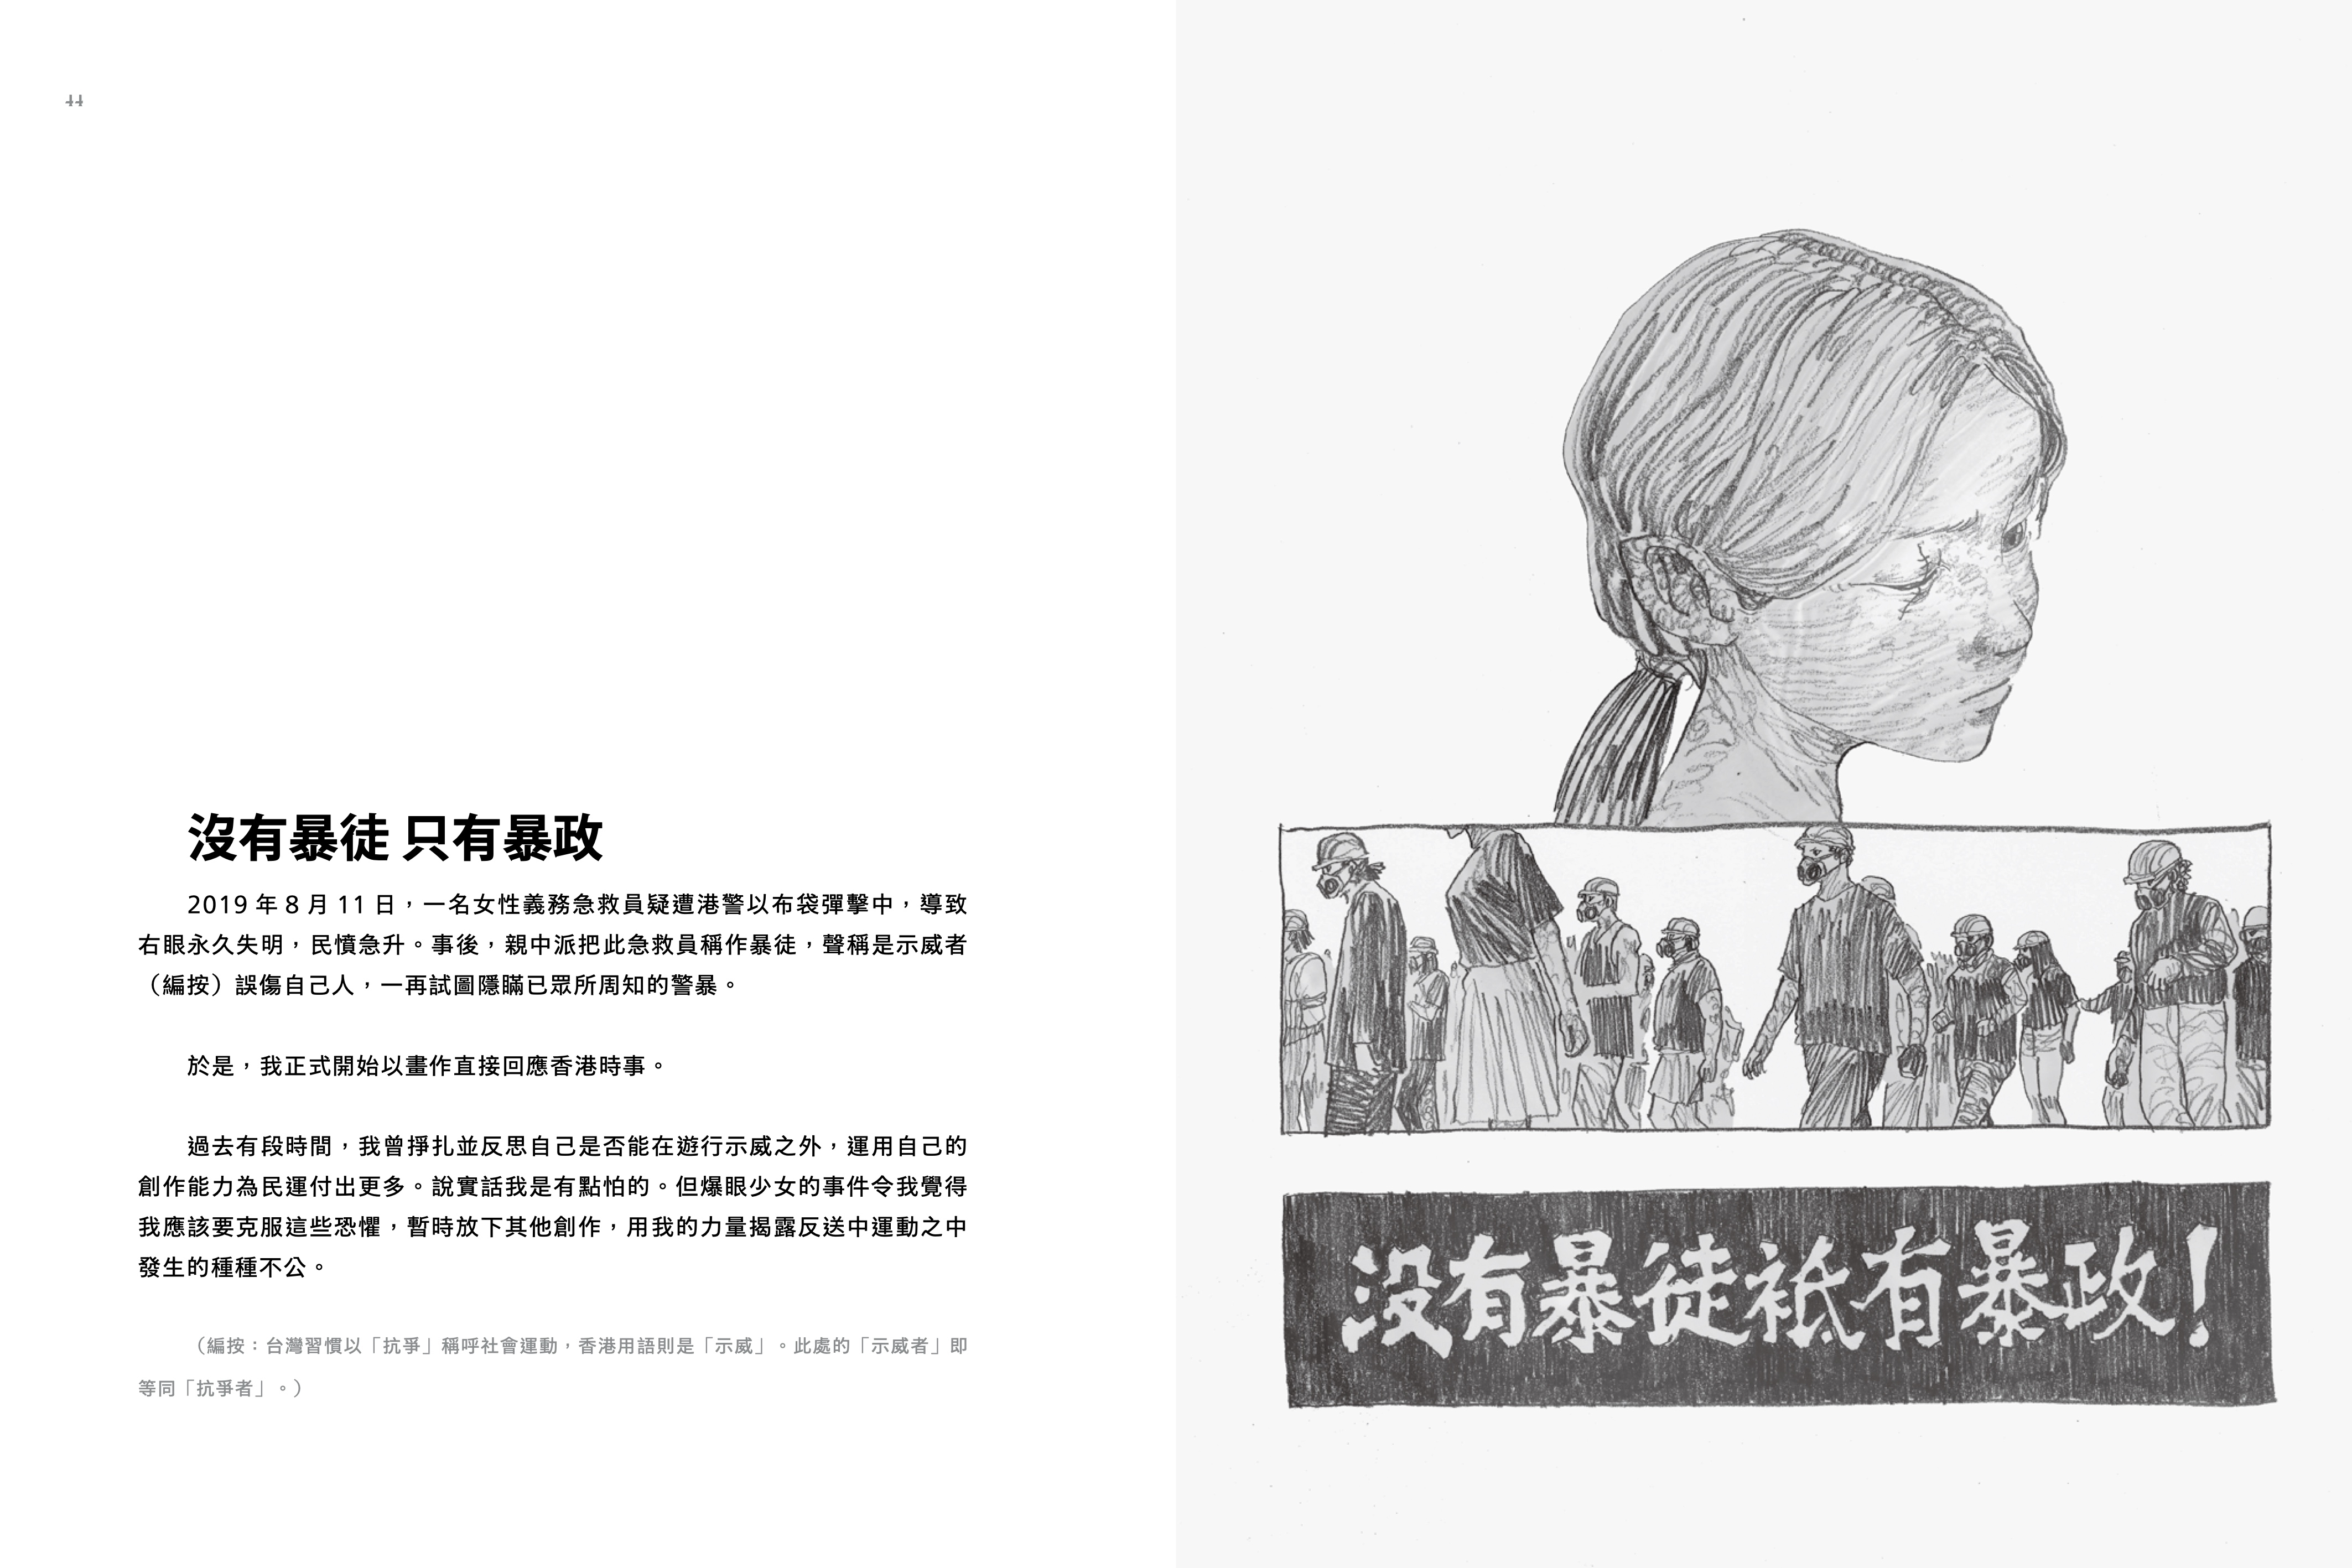 被消失的香港 港漫画家 用铅笔参与抗争 反送中 盖亚文化 柳广成 大纪元